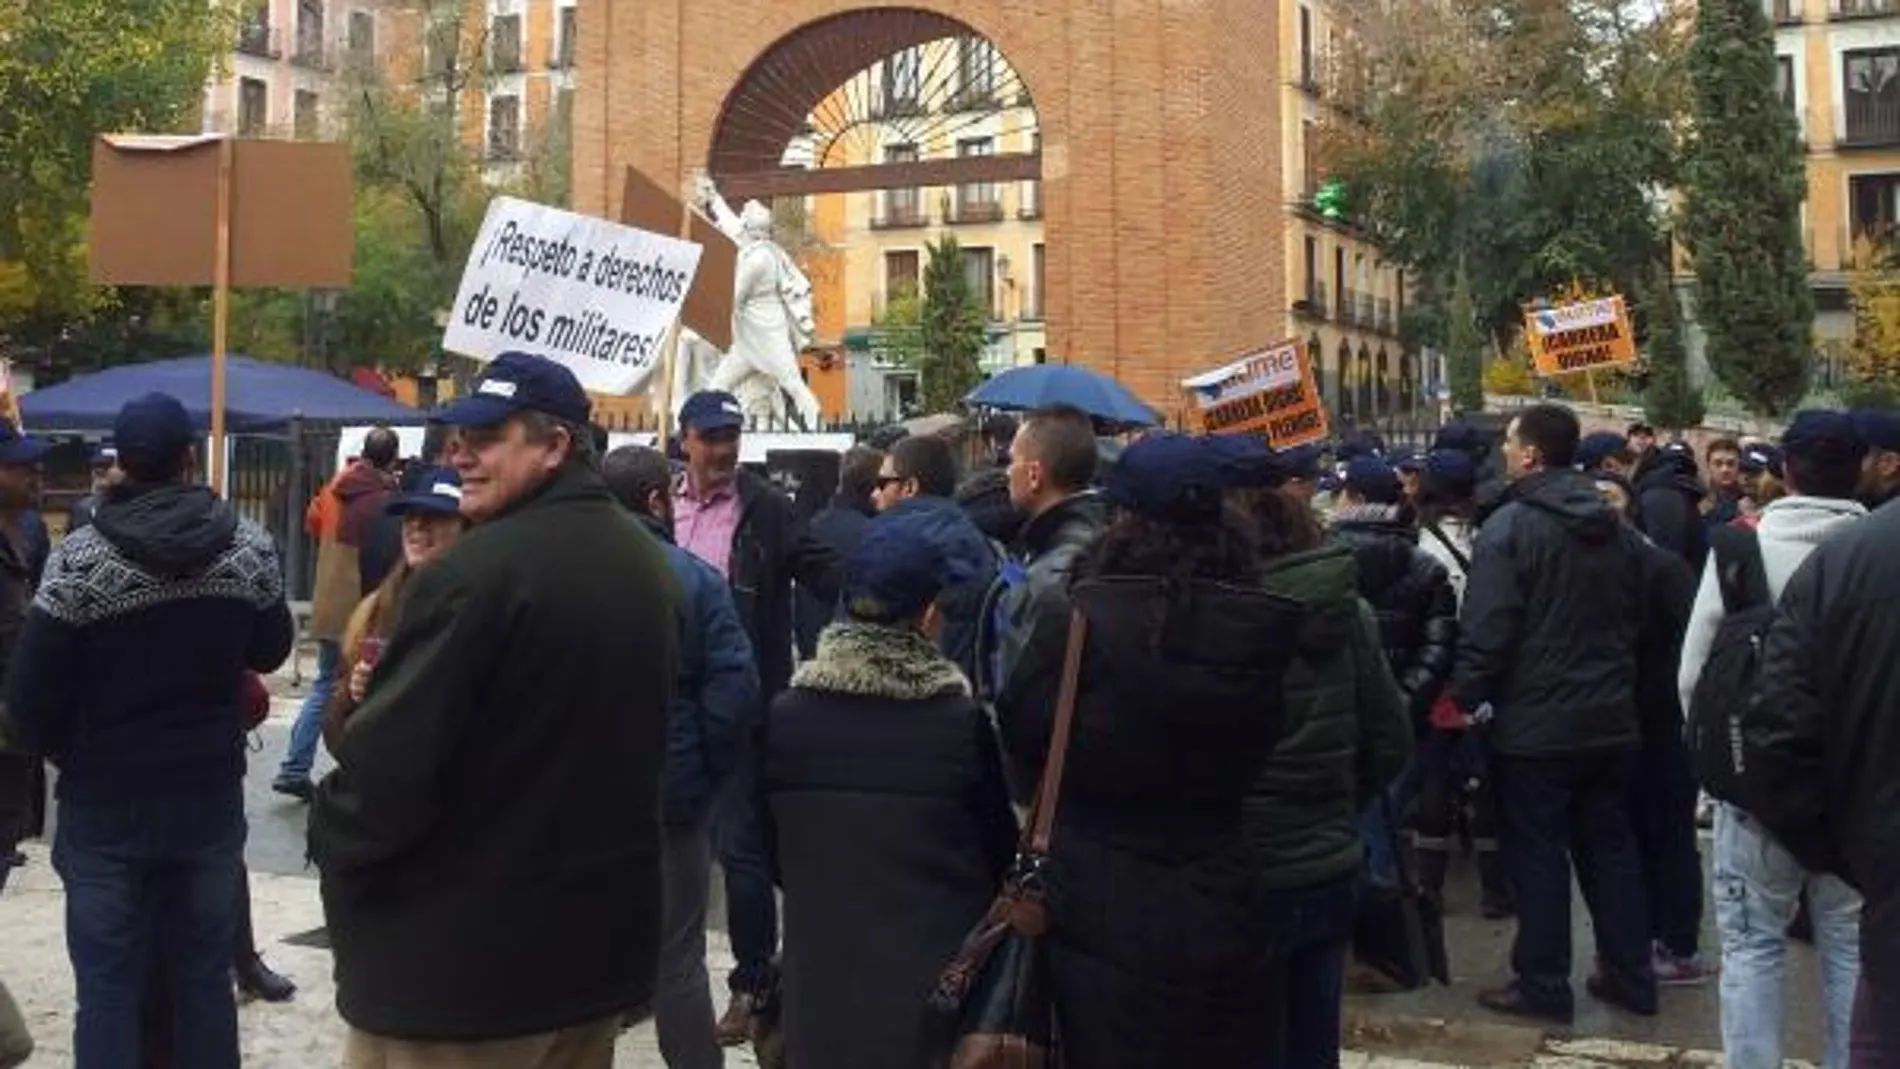 Más de cien militares se manifesta en las calles de Madrid para reivindicar más derechos y dignidad